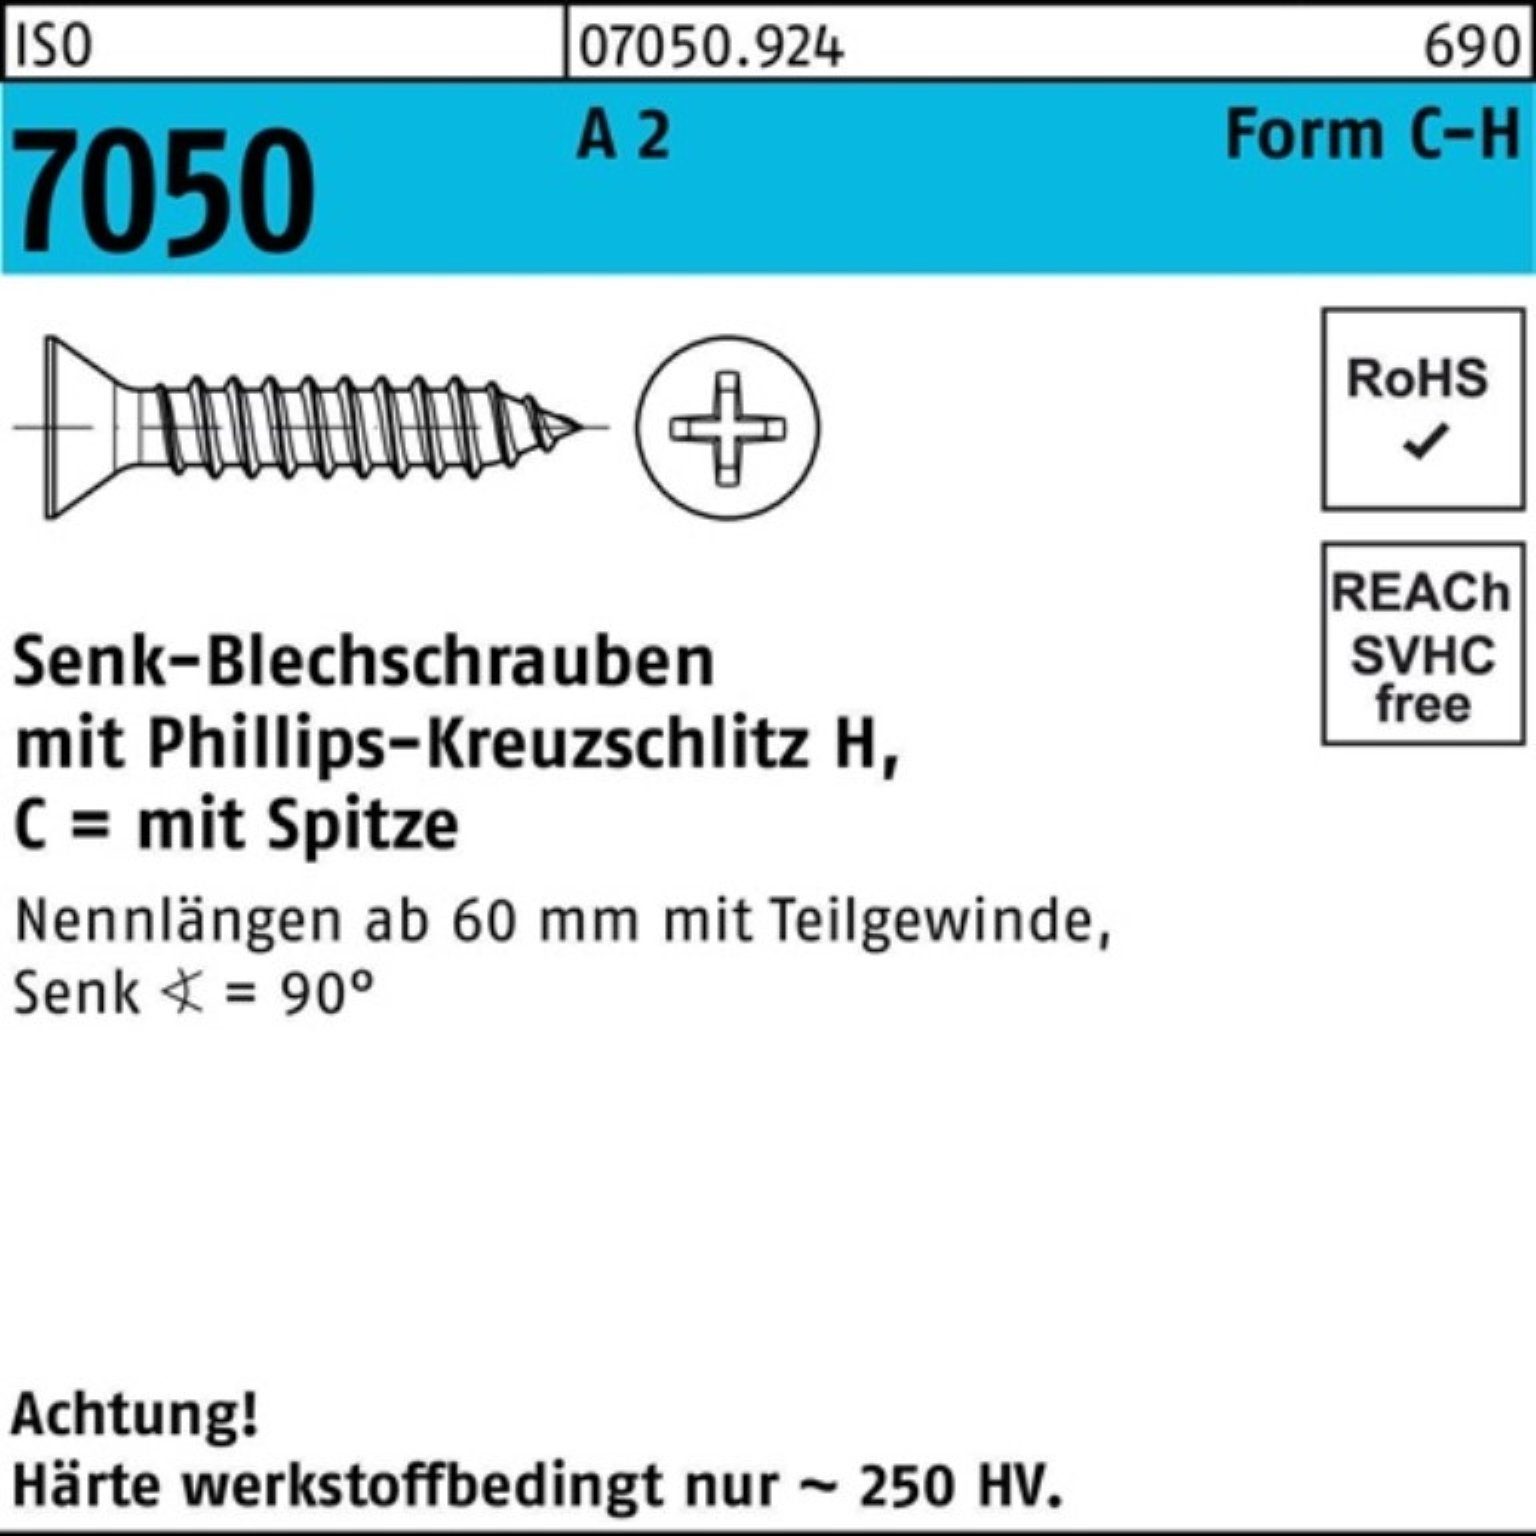 A Pack -C-H 500er 7050 Spitze/PH 22 500 Reyher ISO Blechschraube 2 SEKO Blechschraube 4,8x